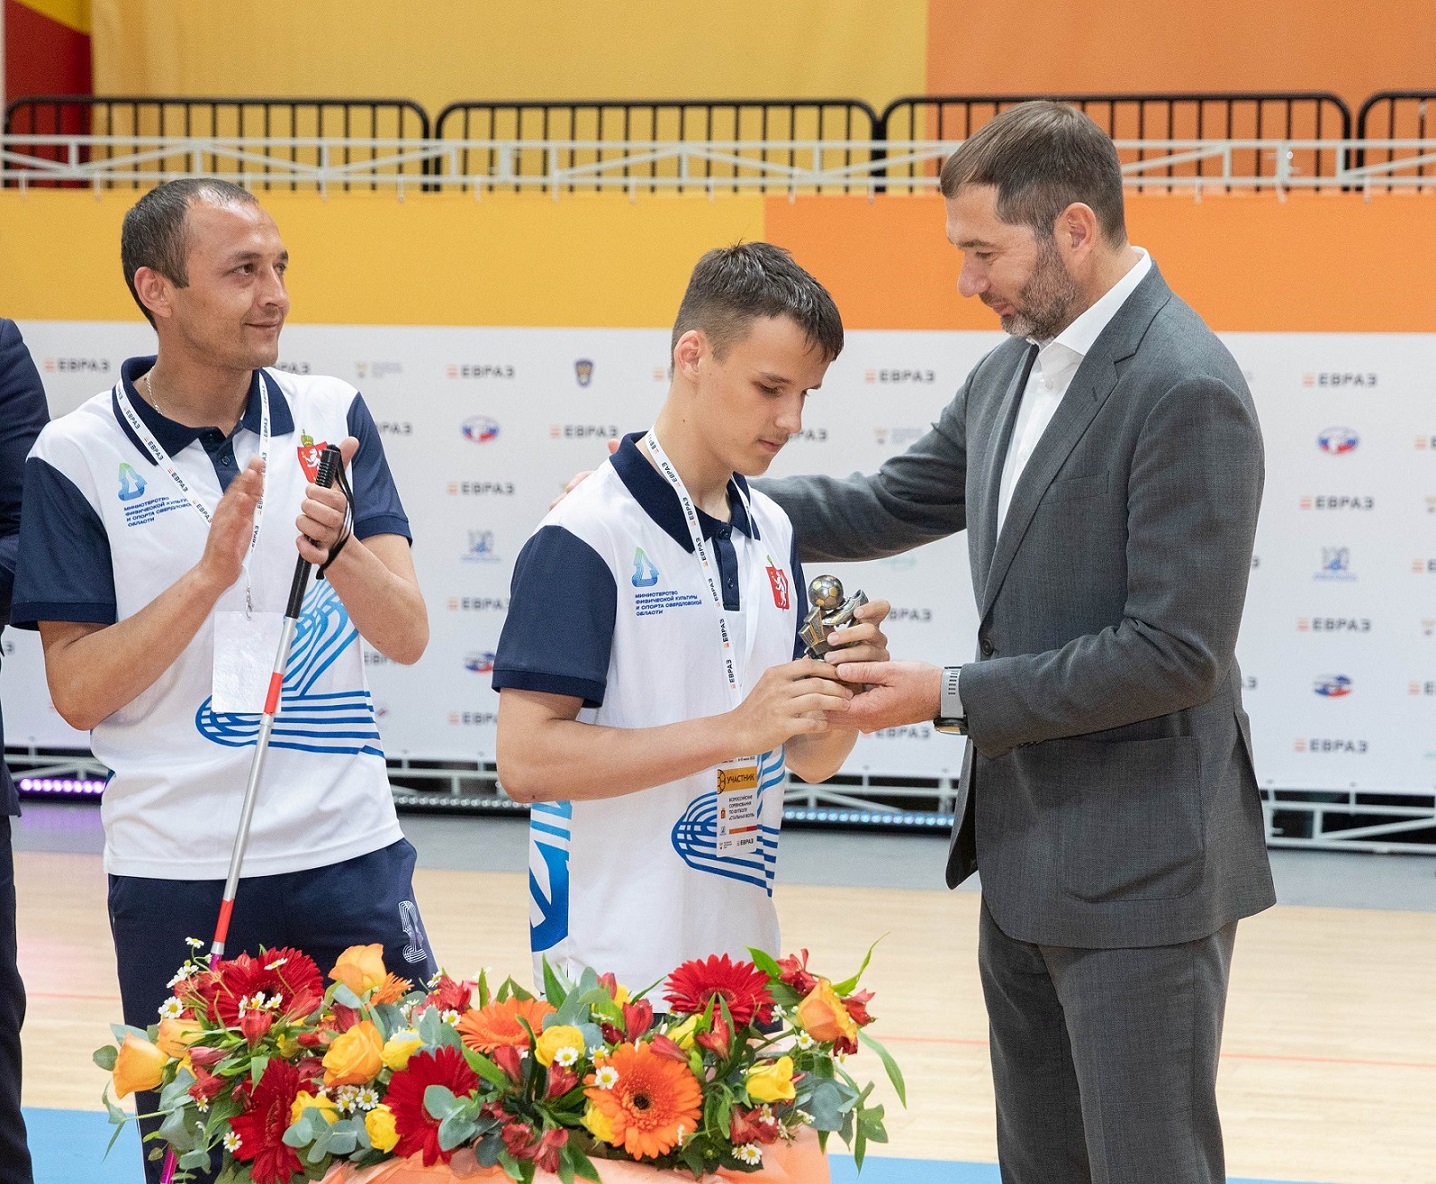 Второй год при поддержке ЕВРАЗа и лично Дениса Новоженова на Урале проводится турнир по футболу среди людей с ДЦП.